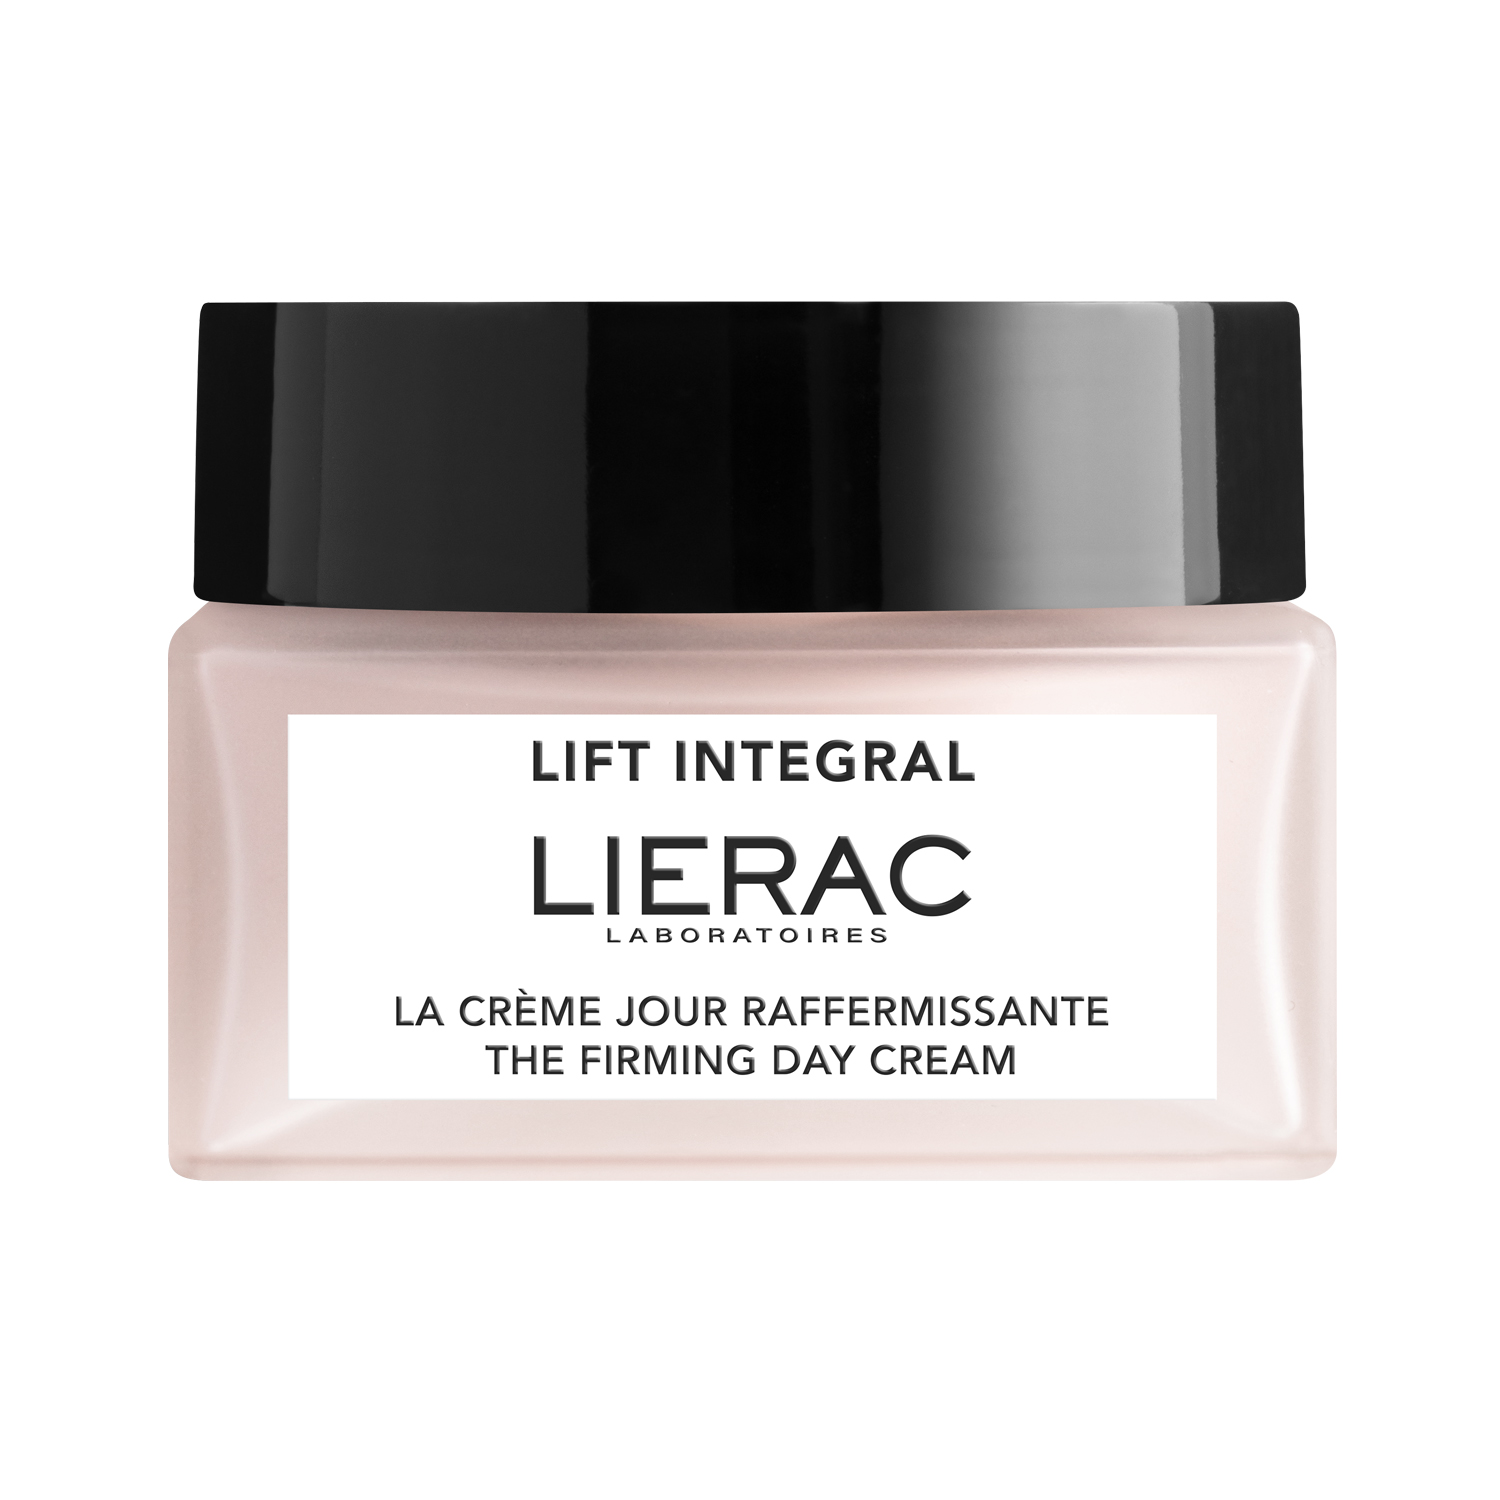 Lierac Lift Integral укрепляющий дневной крем-лифтинг для лица 50мл lift integral дневной укрепляющий крем сменный блок 50 мл lierac